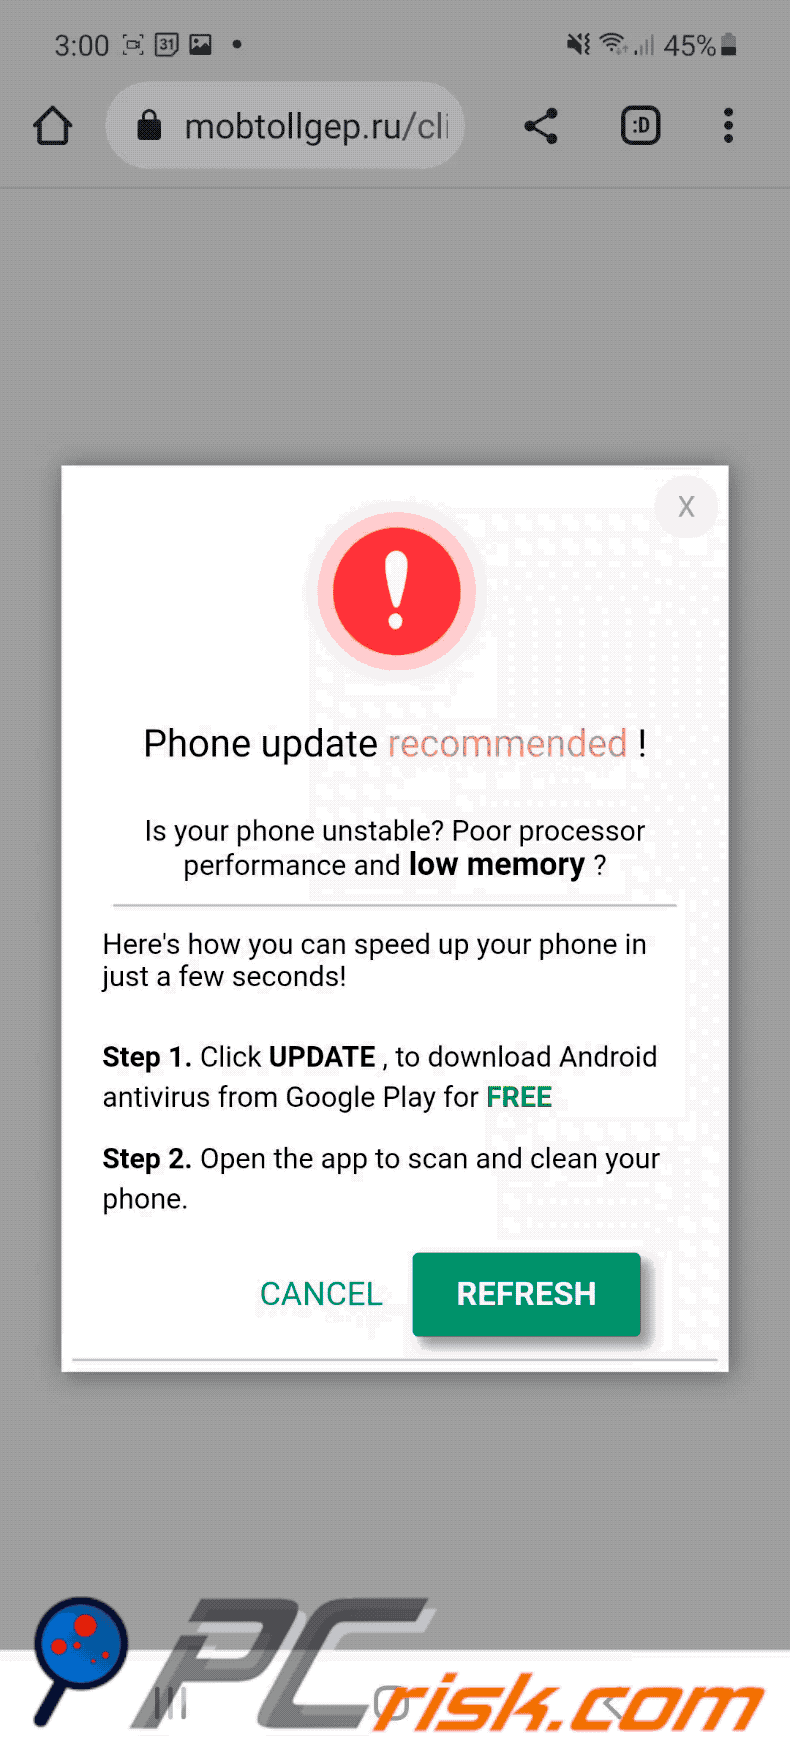 Aspetto di questa variante di truffa Phone Update Recommended Android  (2022-12-22 - GIF)